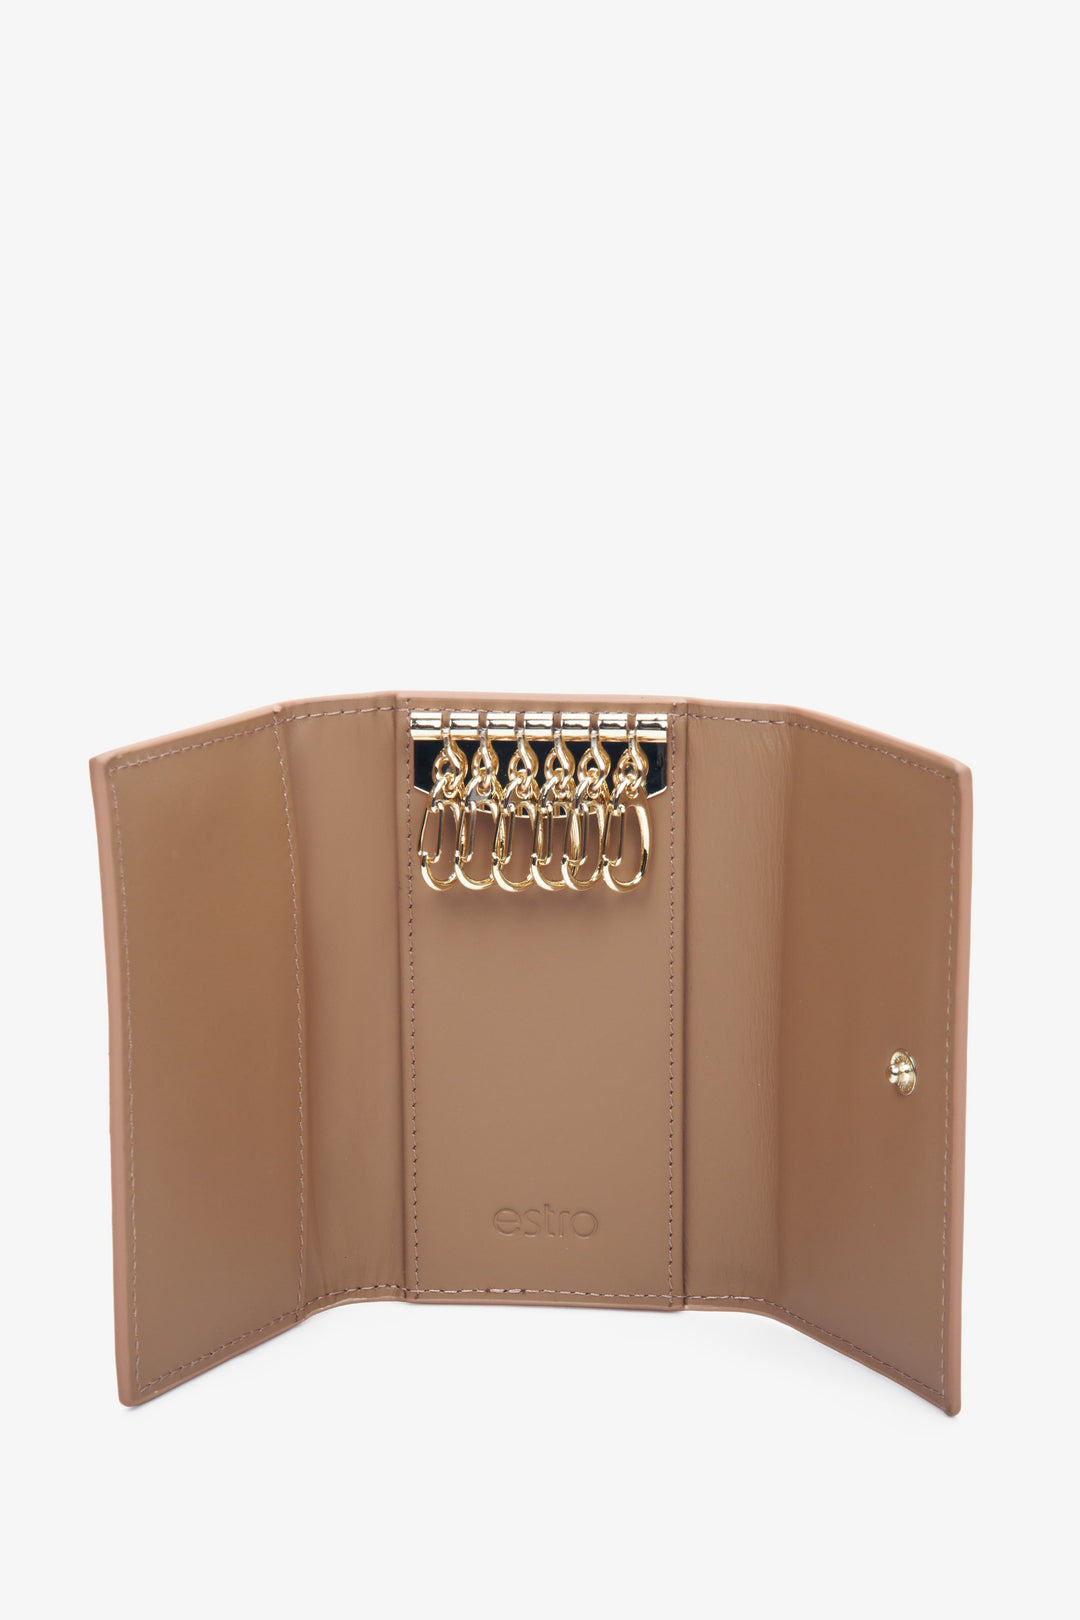 Estro beige genuine leather key case - close-up of the interior.